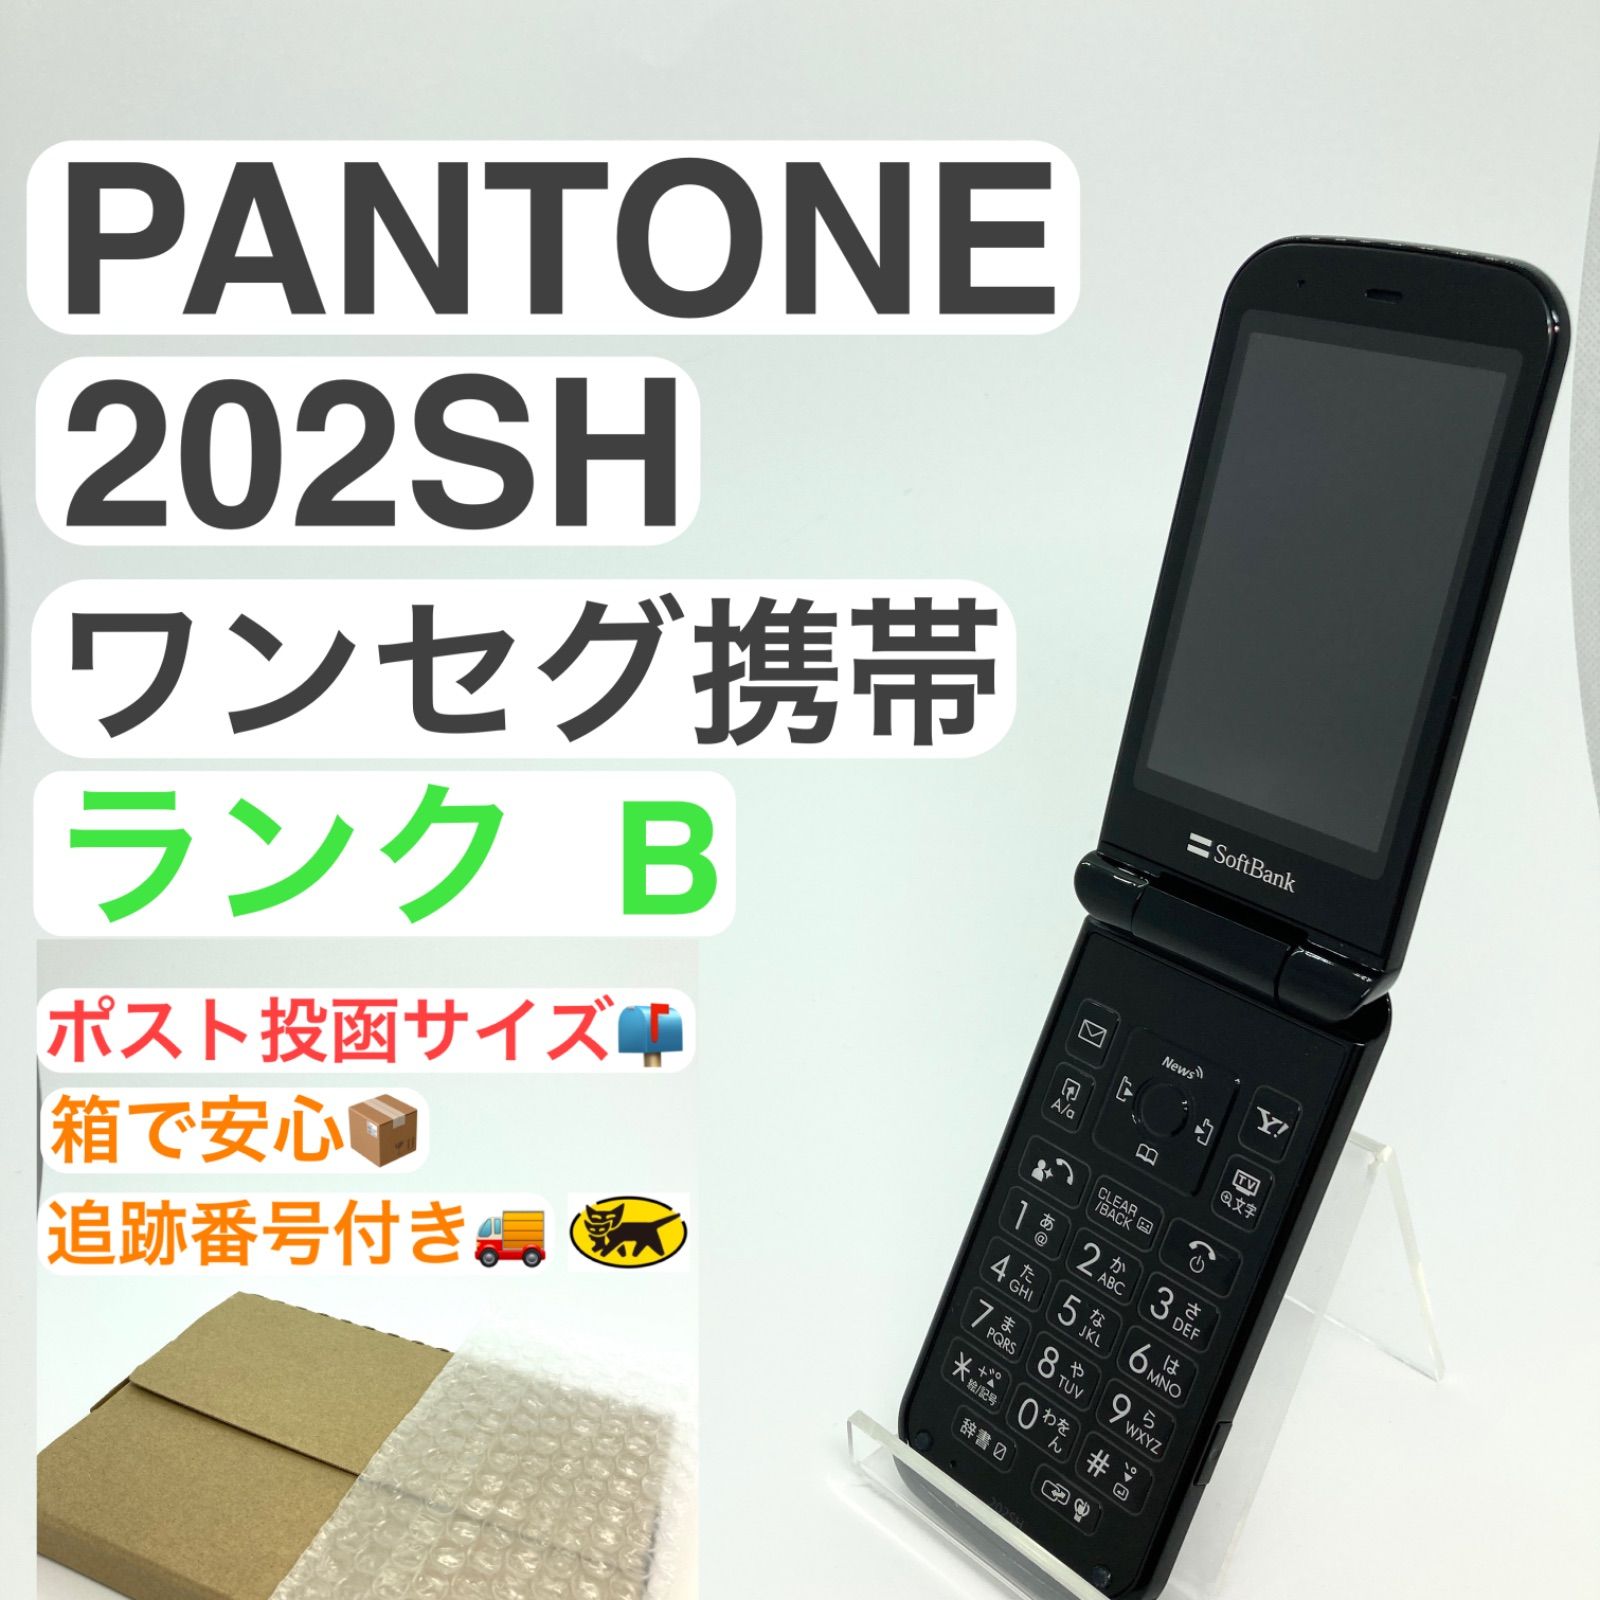 SoftBank 202SH 携帯電話 ガラケー - 携帯電話